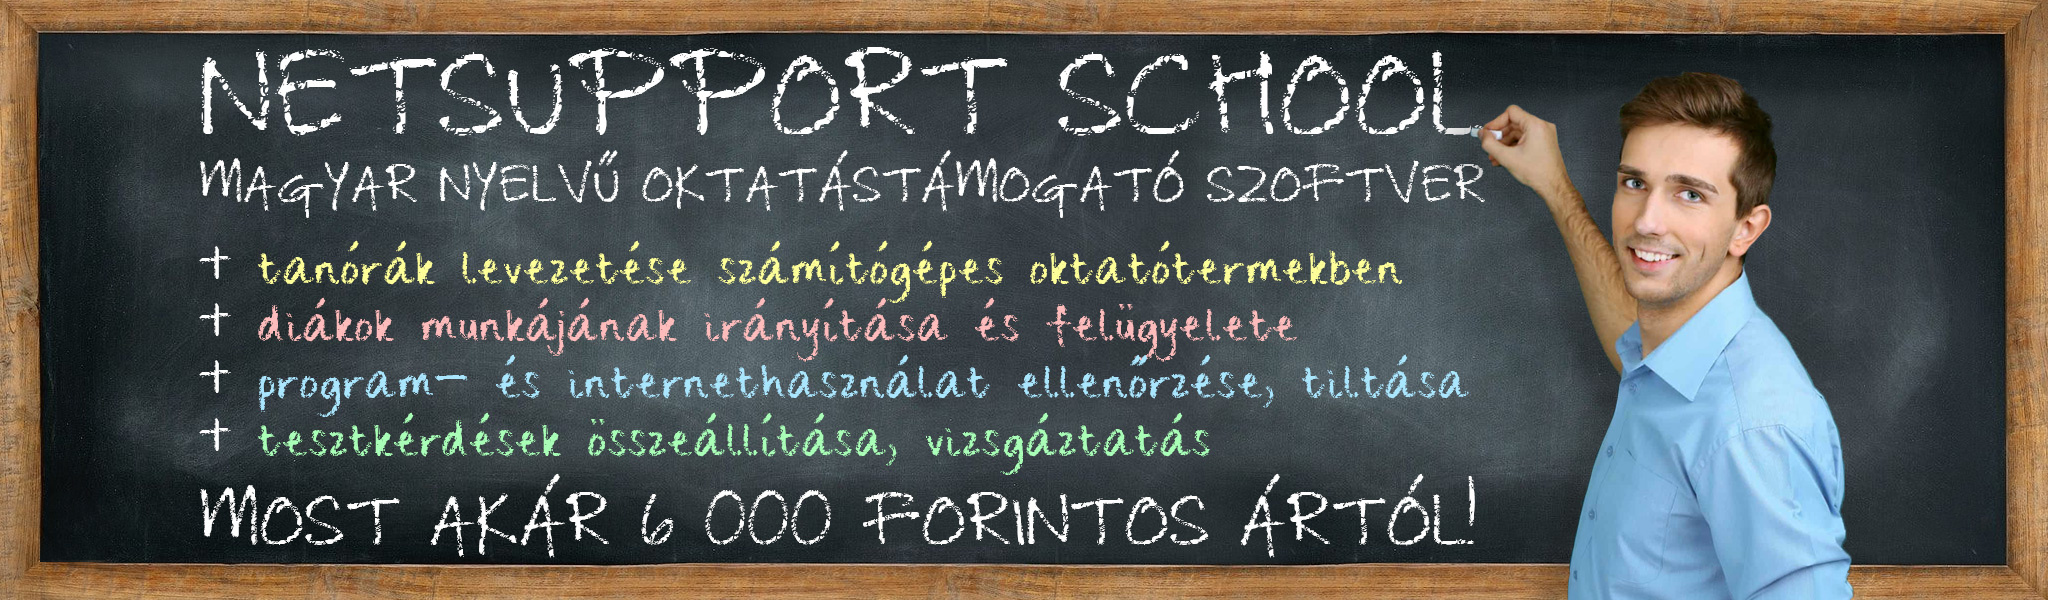 NetSupport School - akár 6 000 forintos ártól!